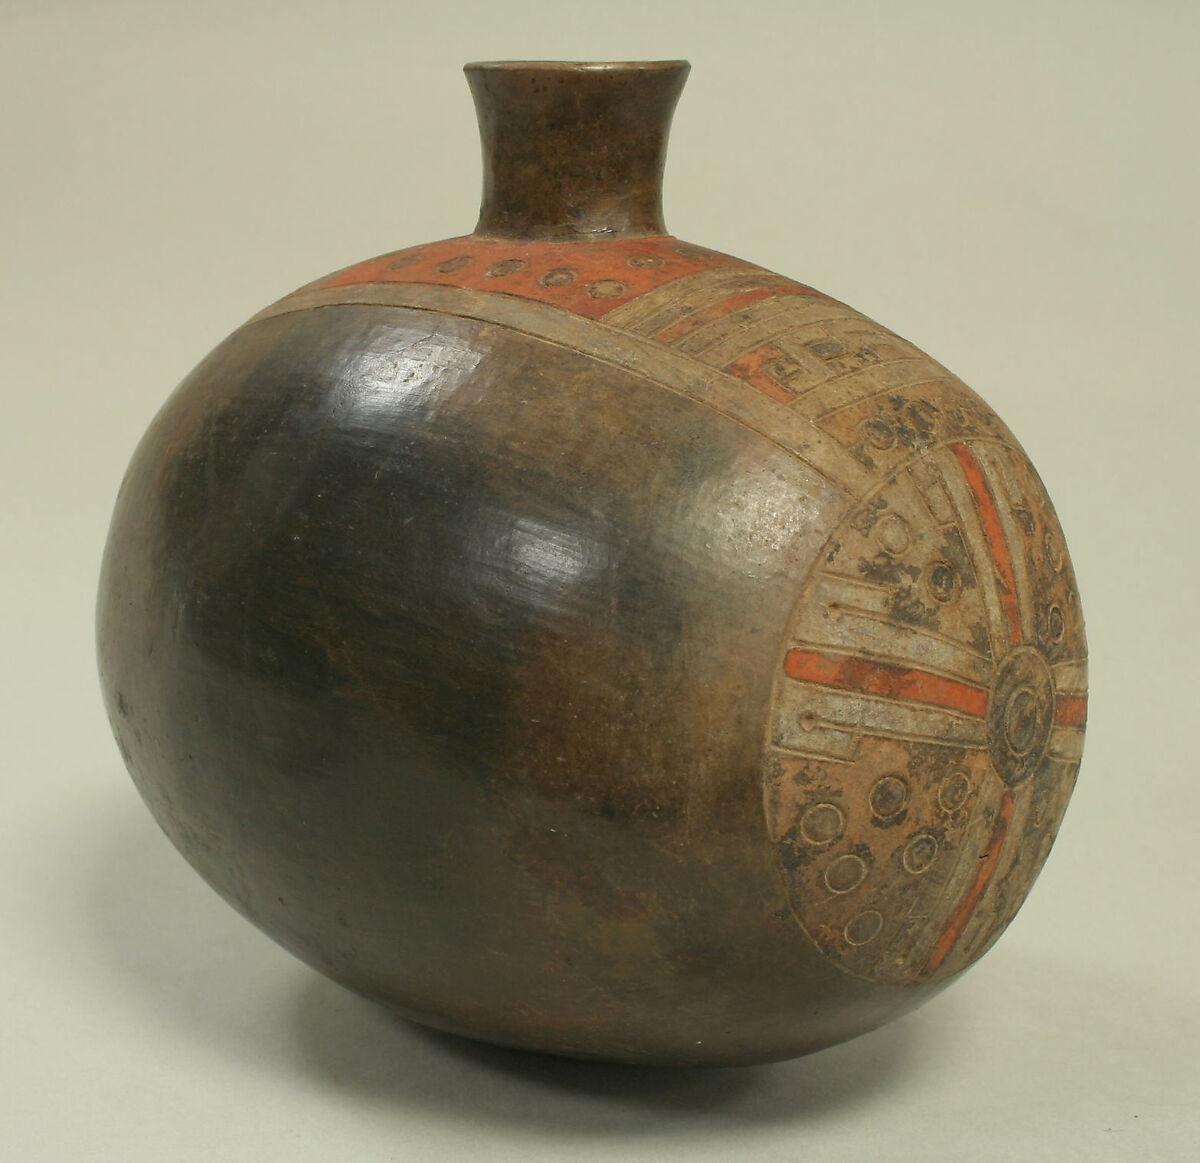 Single Spout Bottle in Melon Form, Ceramic, pigment, Paracas 